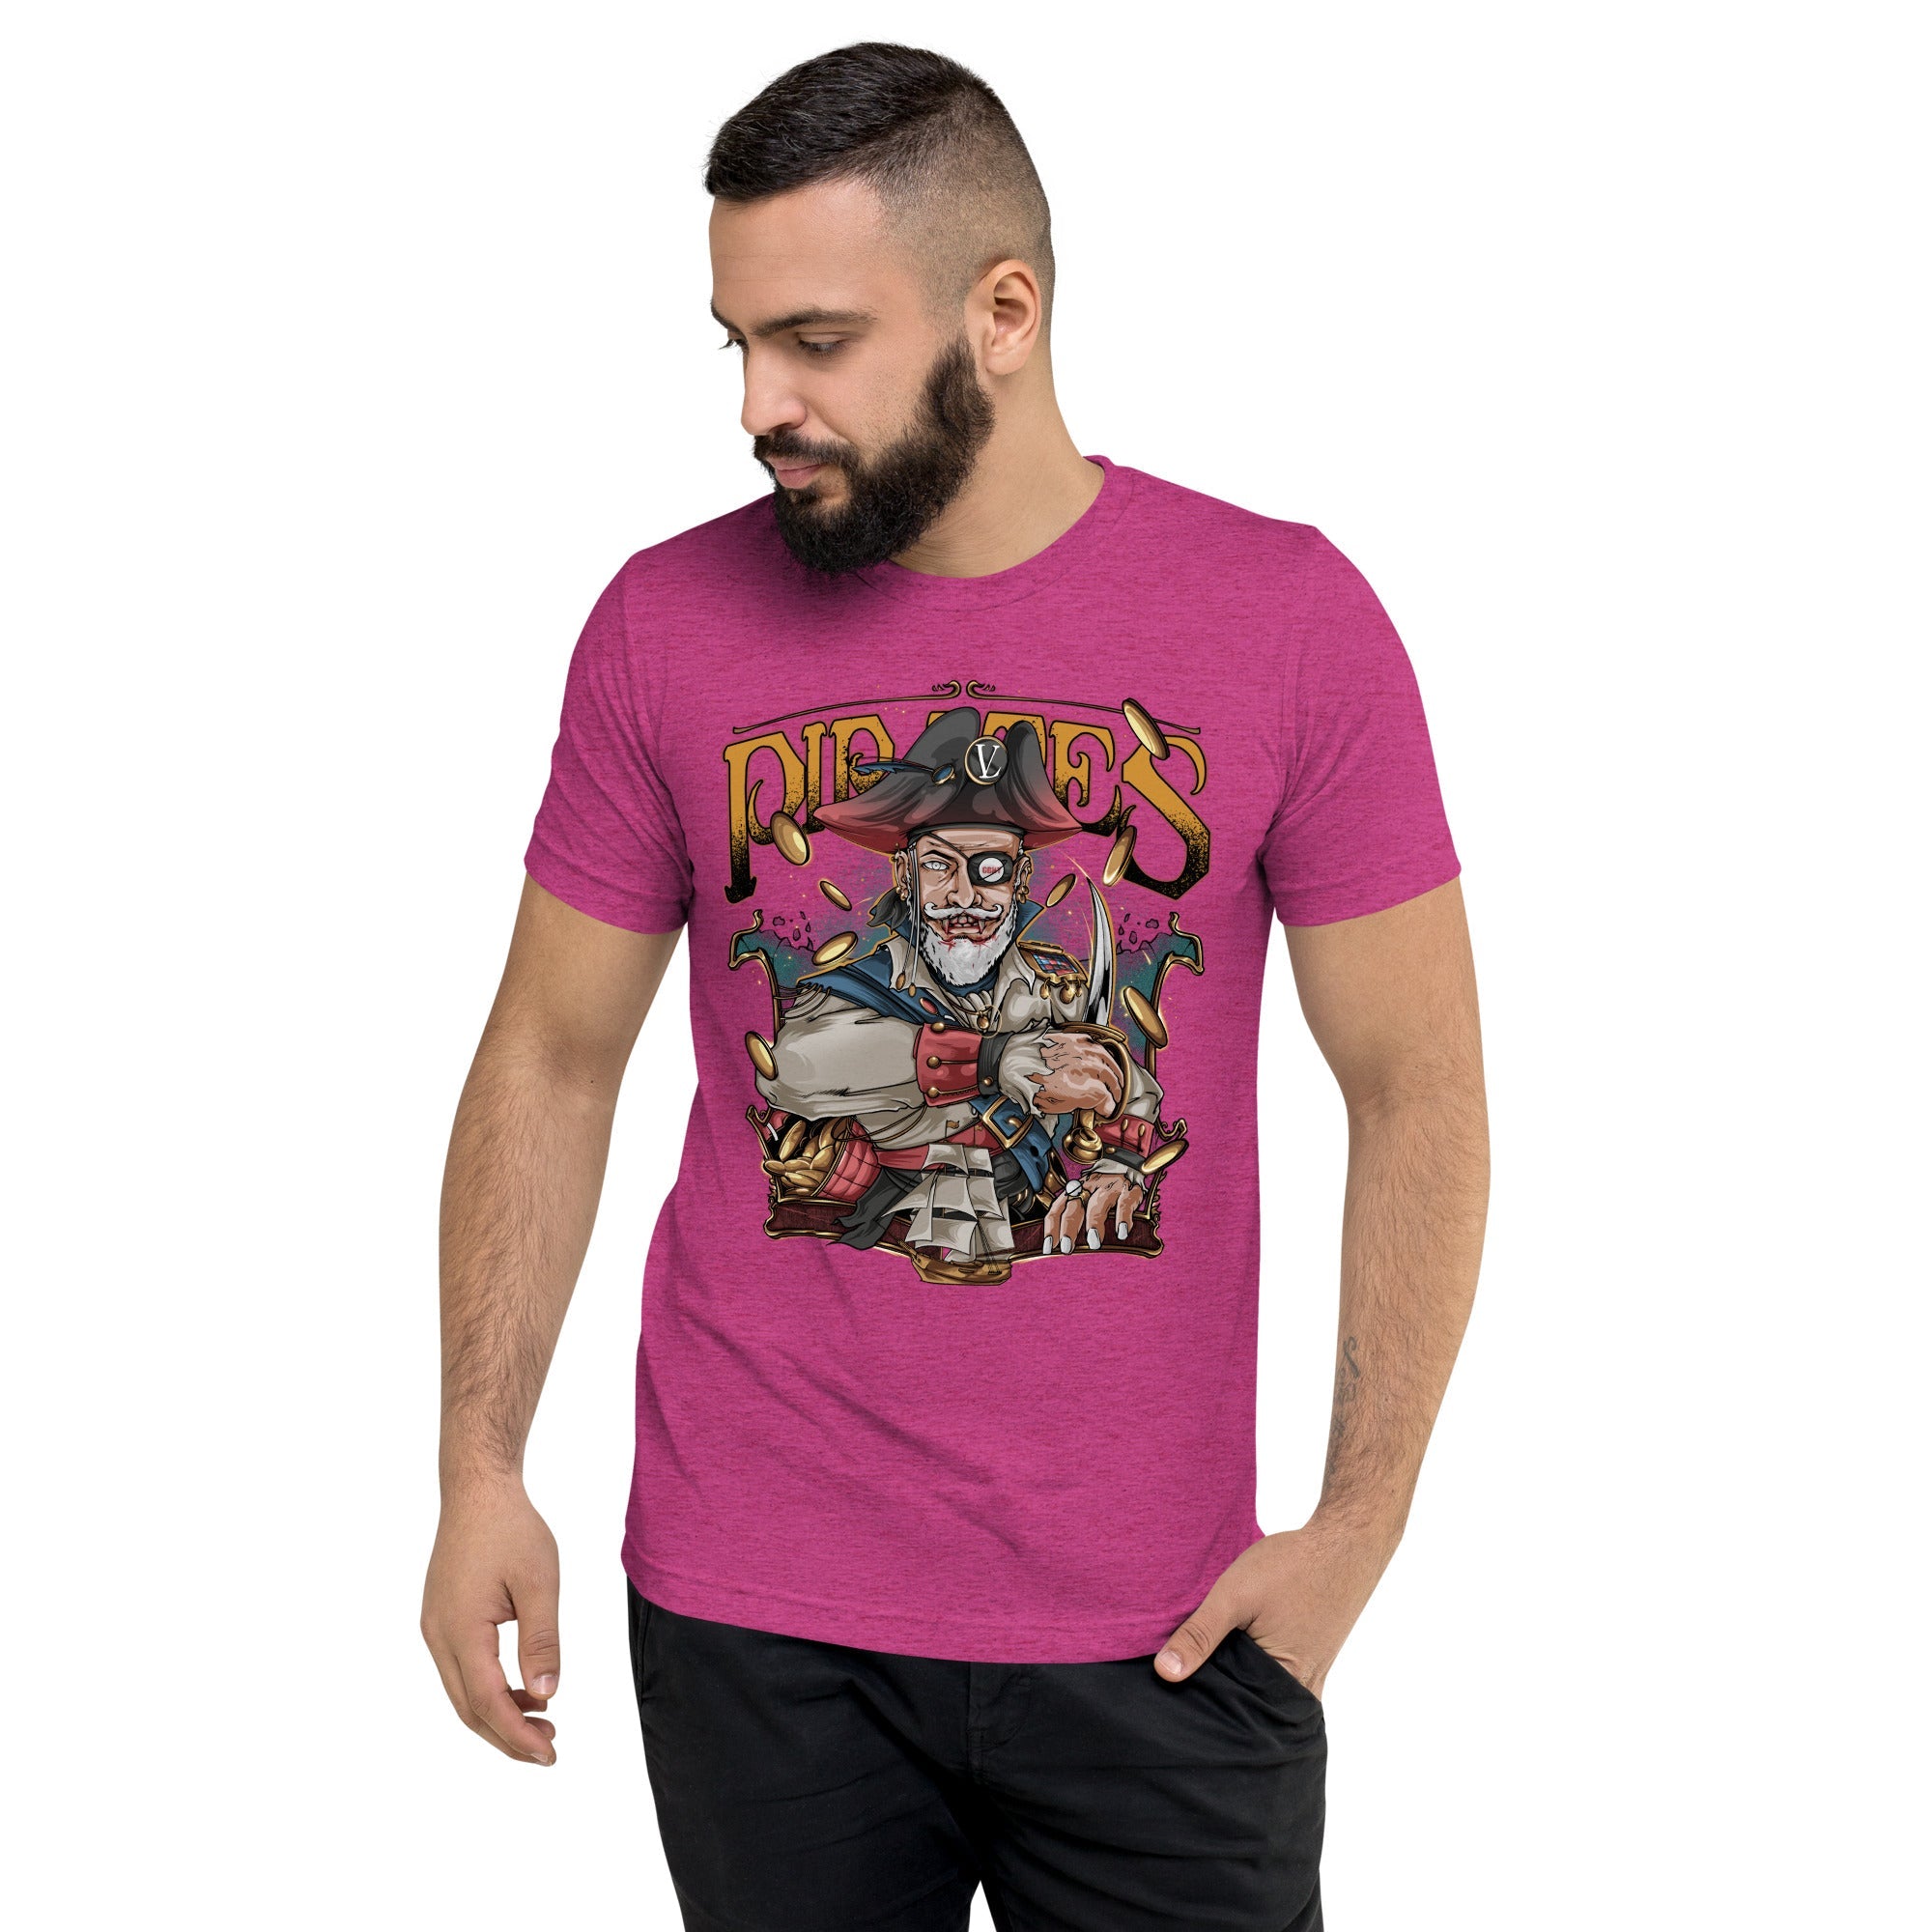 GBNY Berry Triblend / XS Vamp Life X GBNY "Pirates King" T-shirt - Men's 4461701_6480